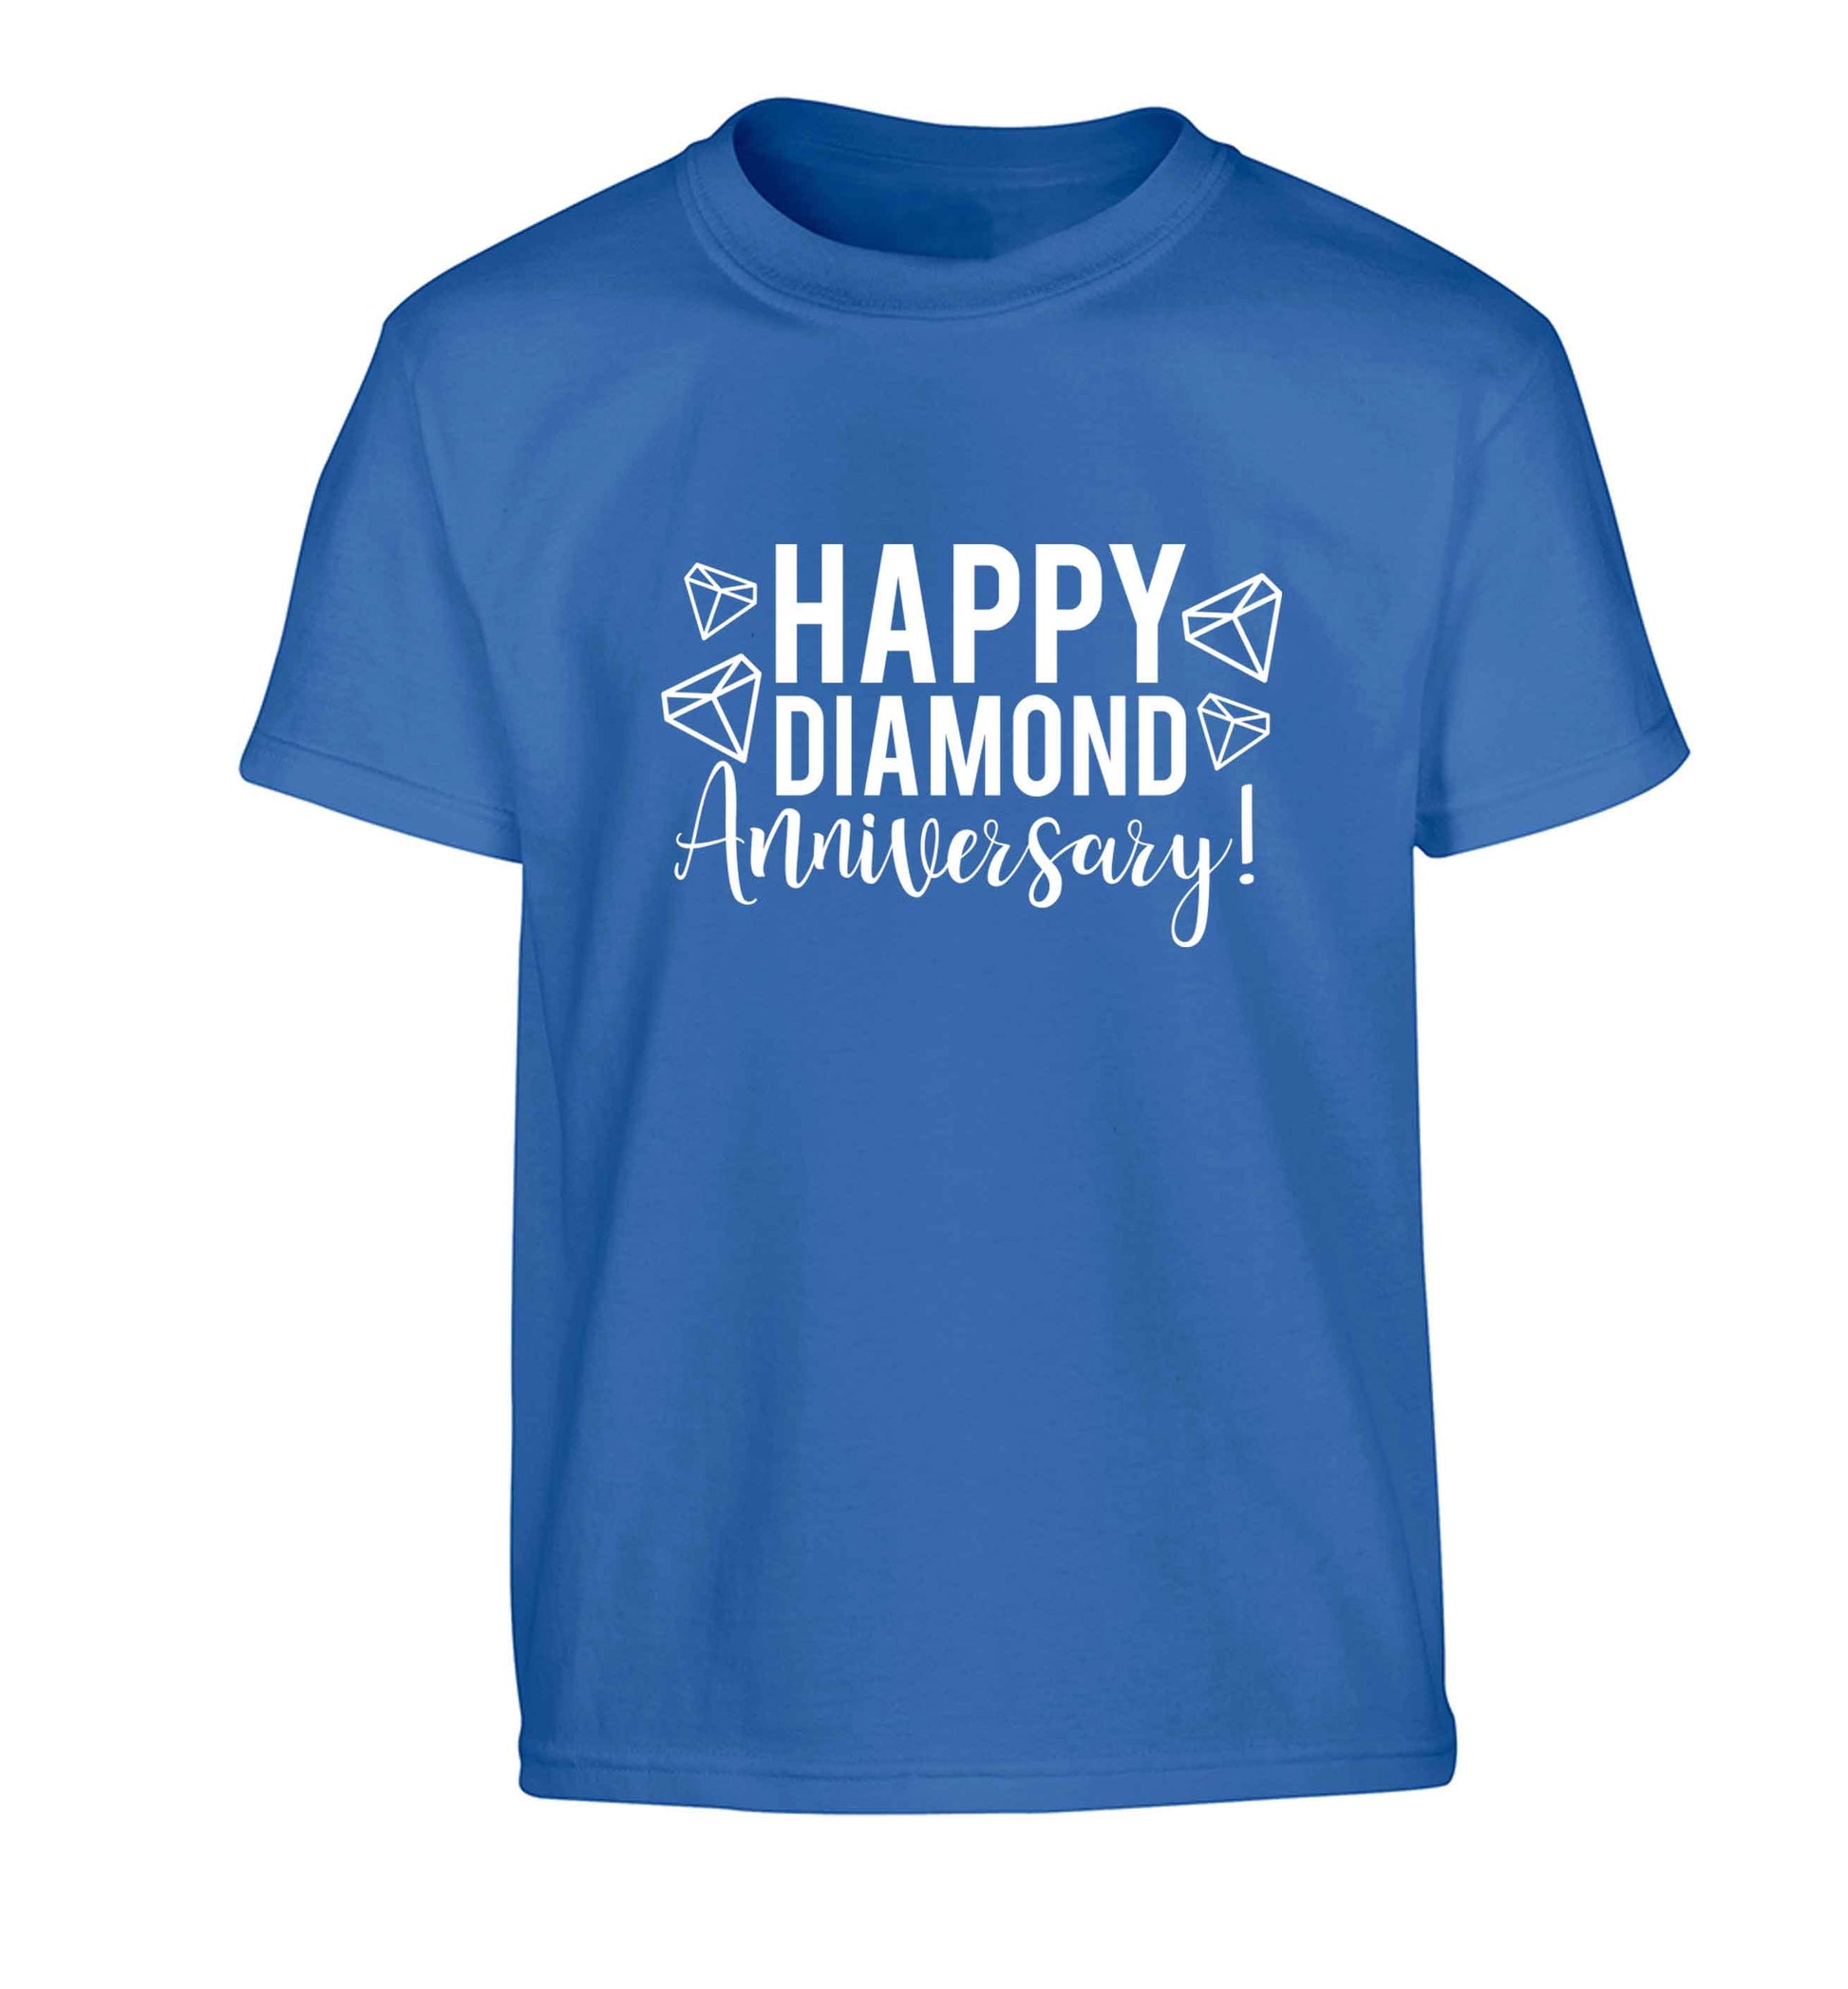 Happy diamond anniversary! Children's blue Tshirt 12-13 Years